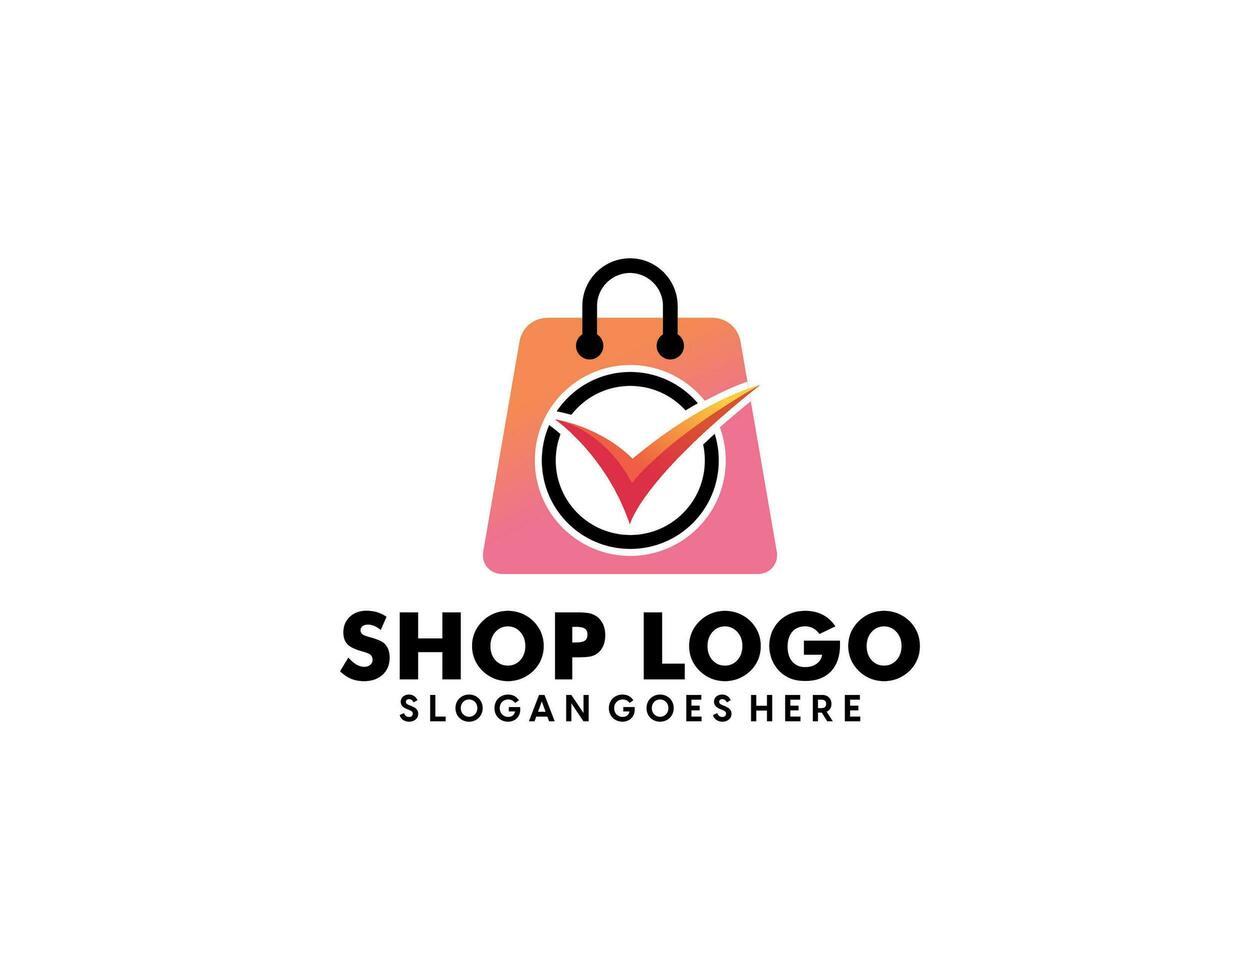 kreatives modernes abstraktes E-Commerce-Logo-Design, bunte Online-Einkaufstaschen-Logo-Designvorlage mit Farbverlauf vektor